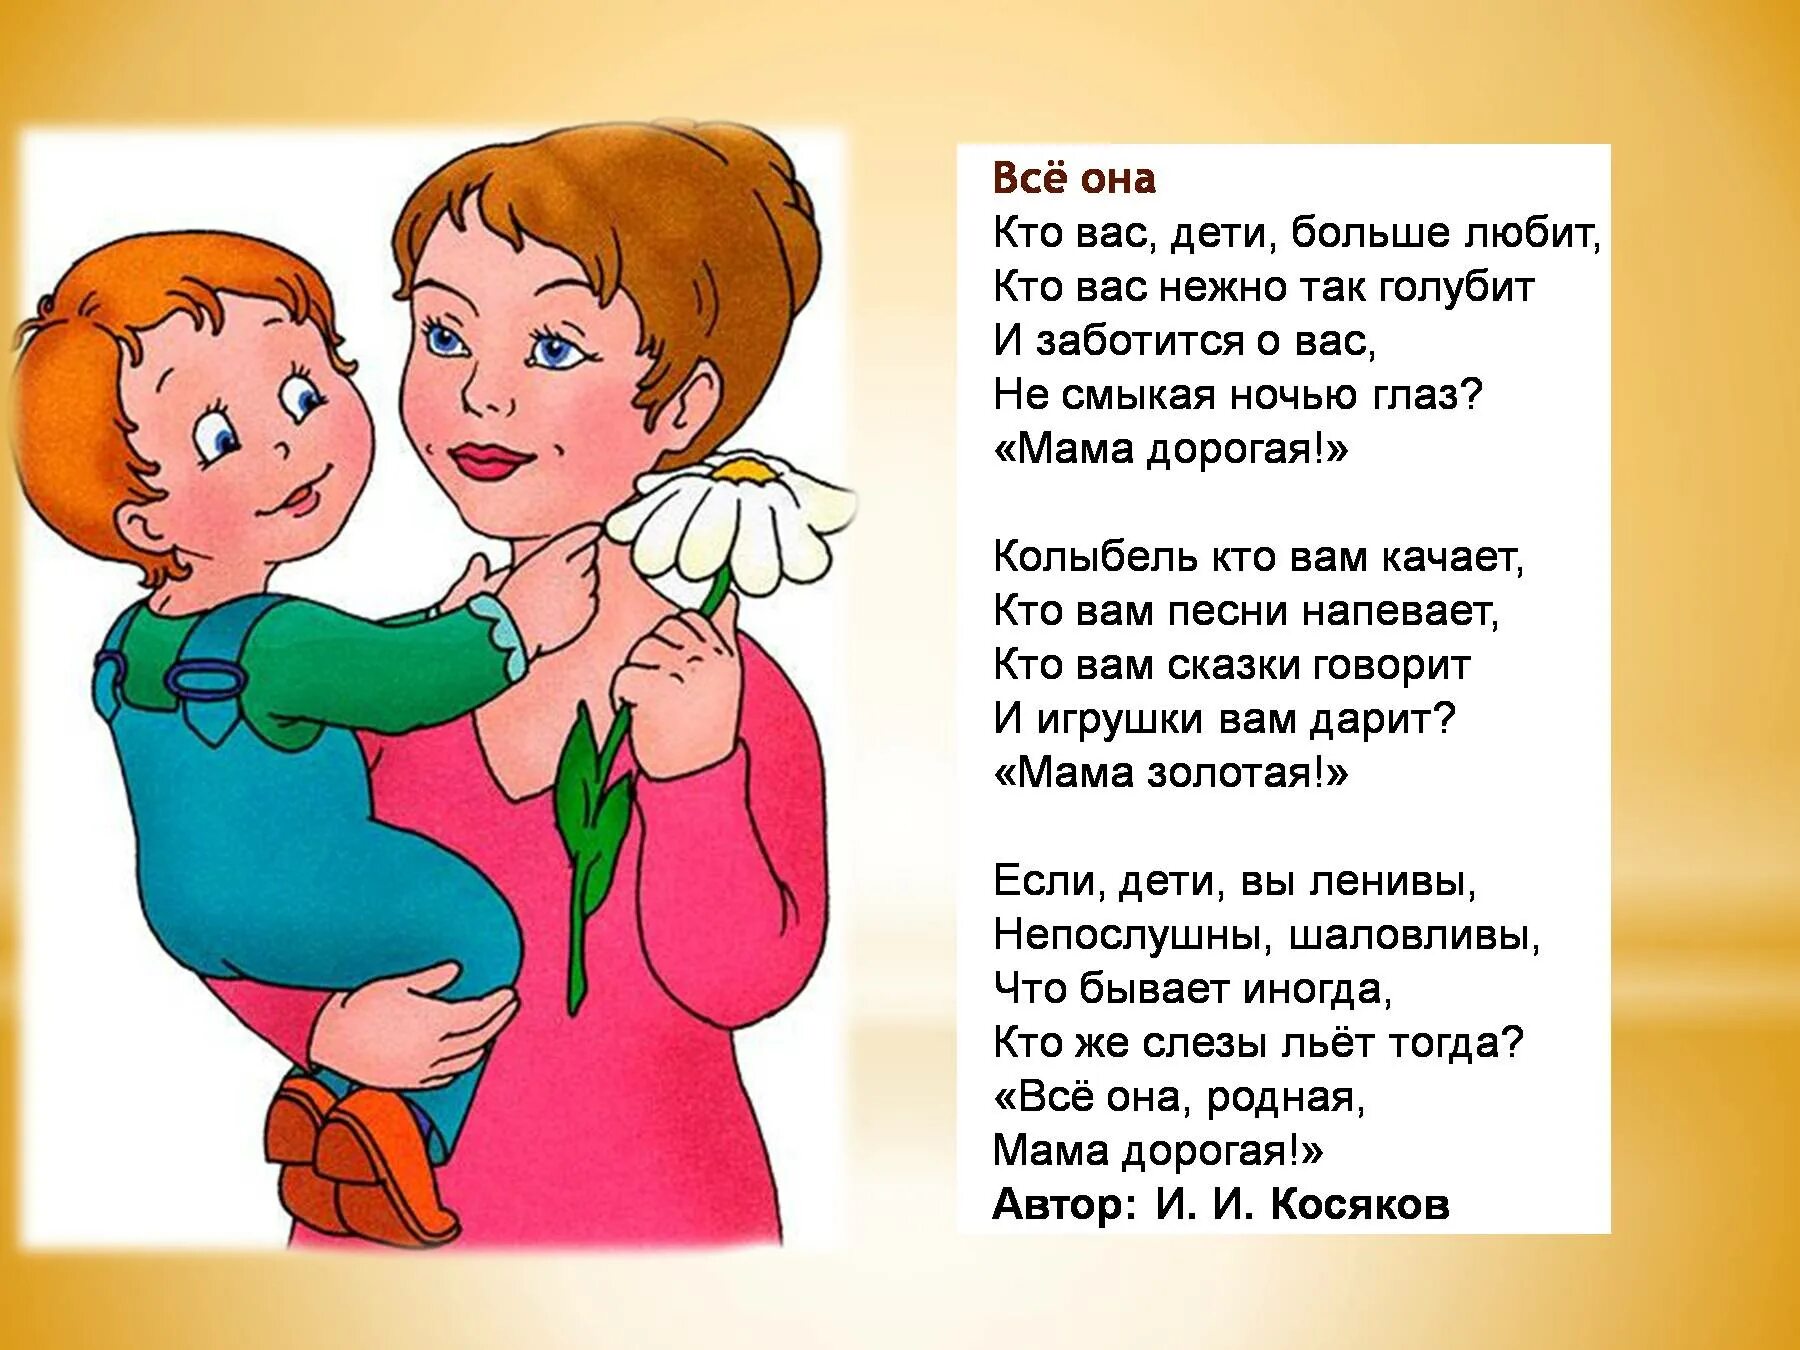 Детские песни о матерях. Стишок про маму для детей. Детские стихи про маму. Стих про маму для детей. Все она стихотворение и.Косякова.